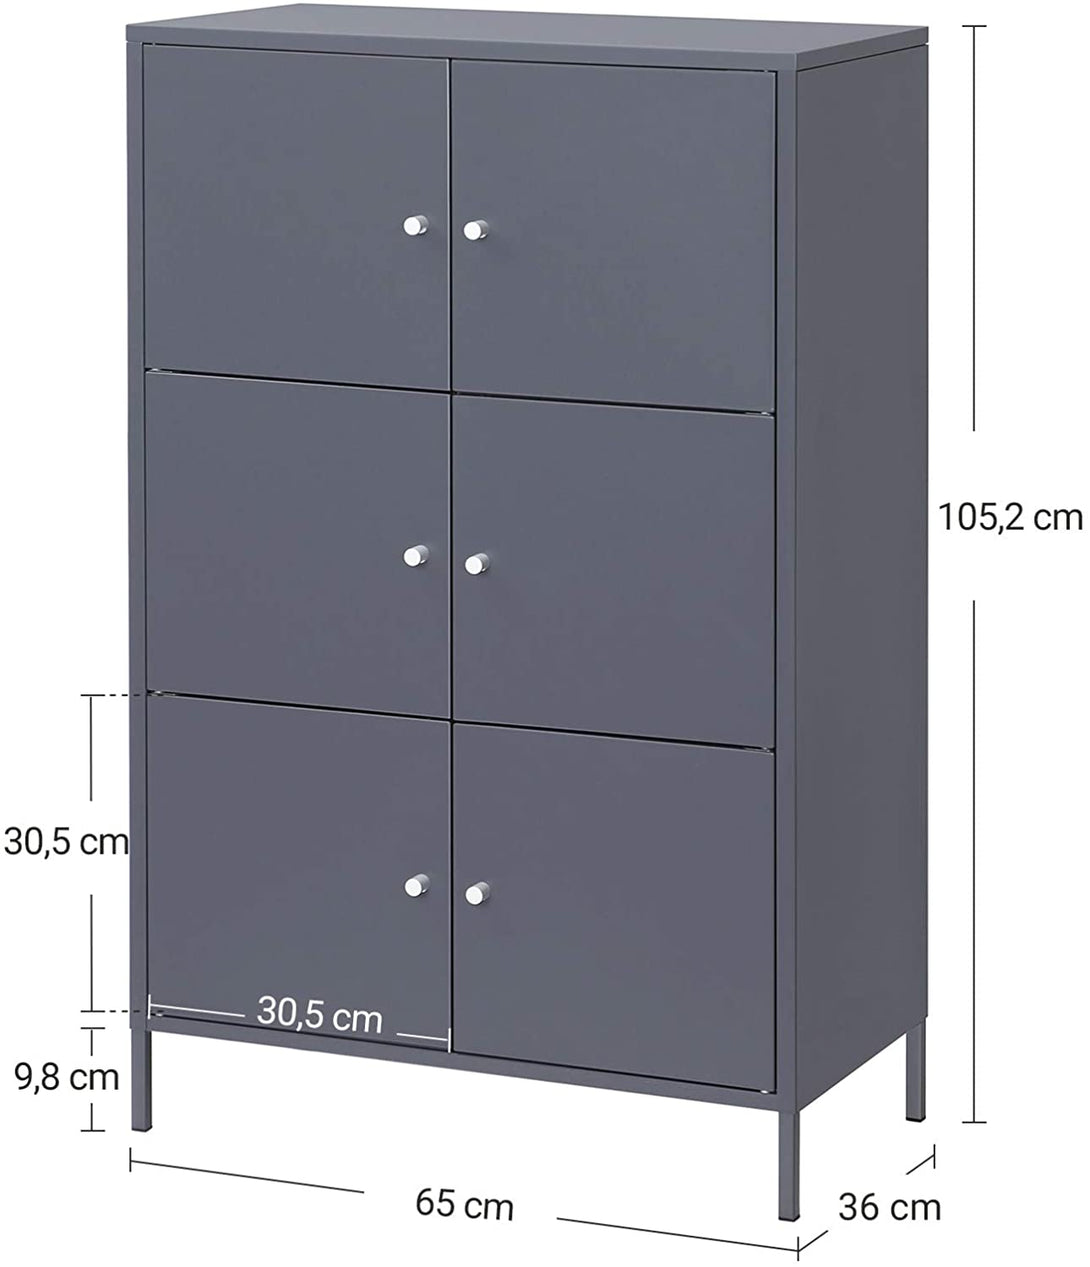 Tárolószekrény, 3 szintes fém irodaszekrény 65 x 36 x 105,2 cm-VASBÚTOR